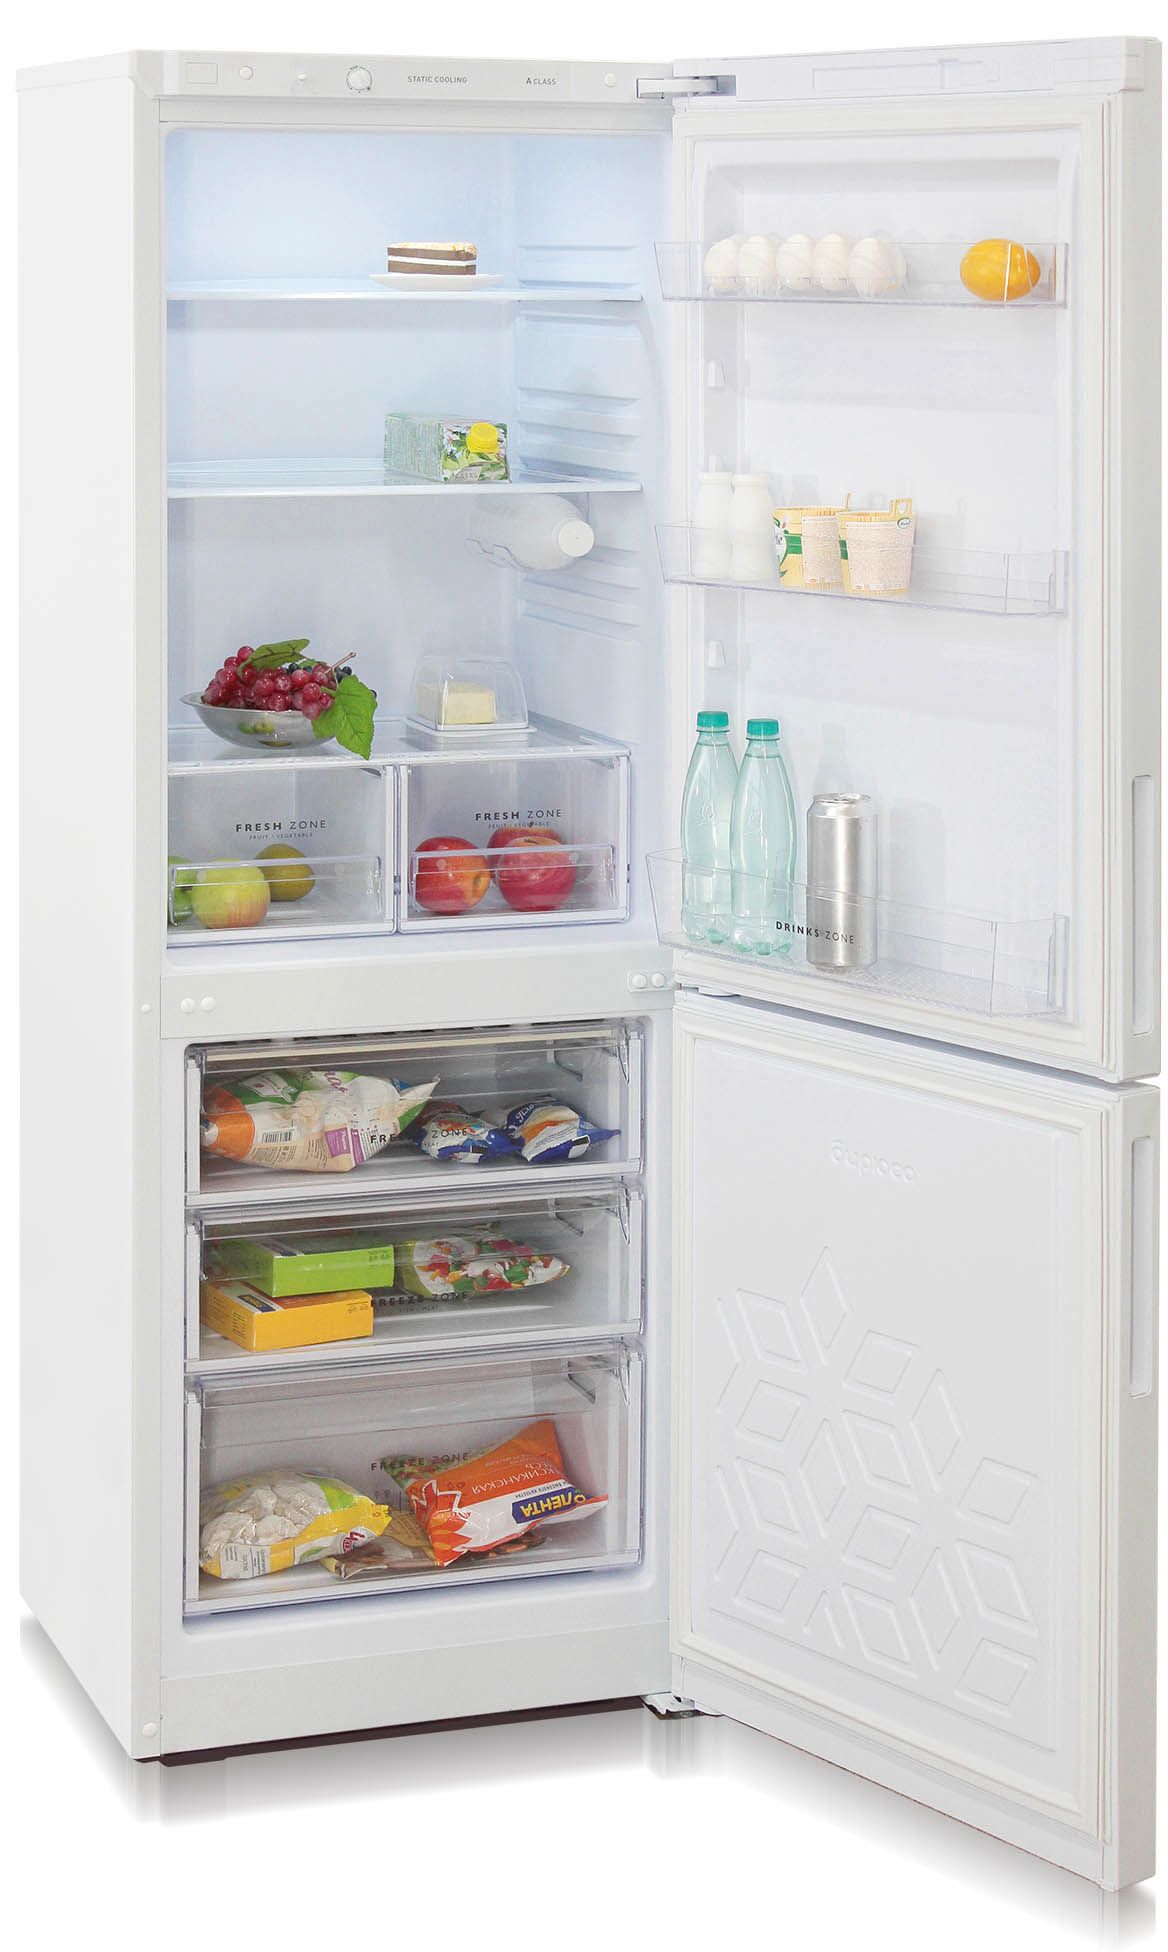 холодильник бирюса 6033, купить в Красноярске холодильник бирюса 6033,  купить в Красноярске дешево холодильник бирюса 6033, купить в Красноярске минимальной цене холодильник бирюса 6033